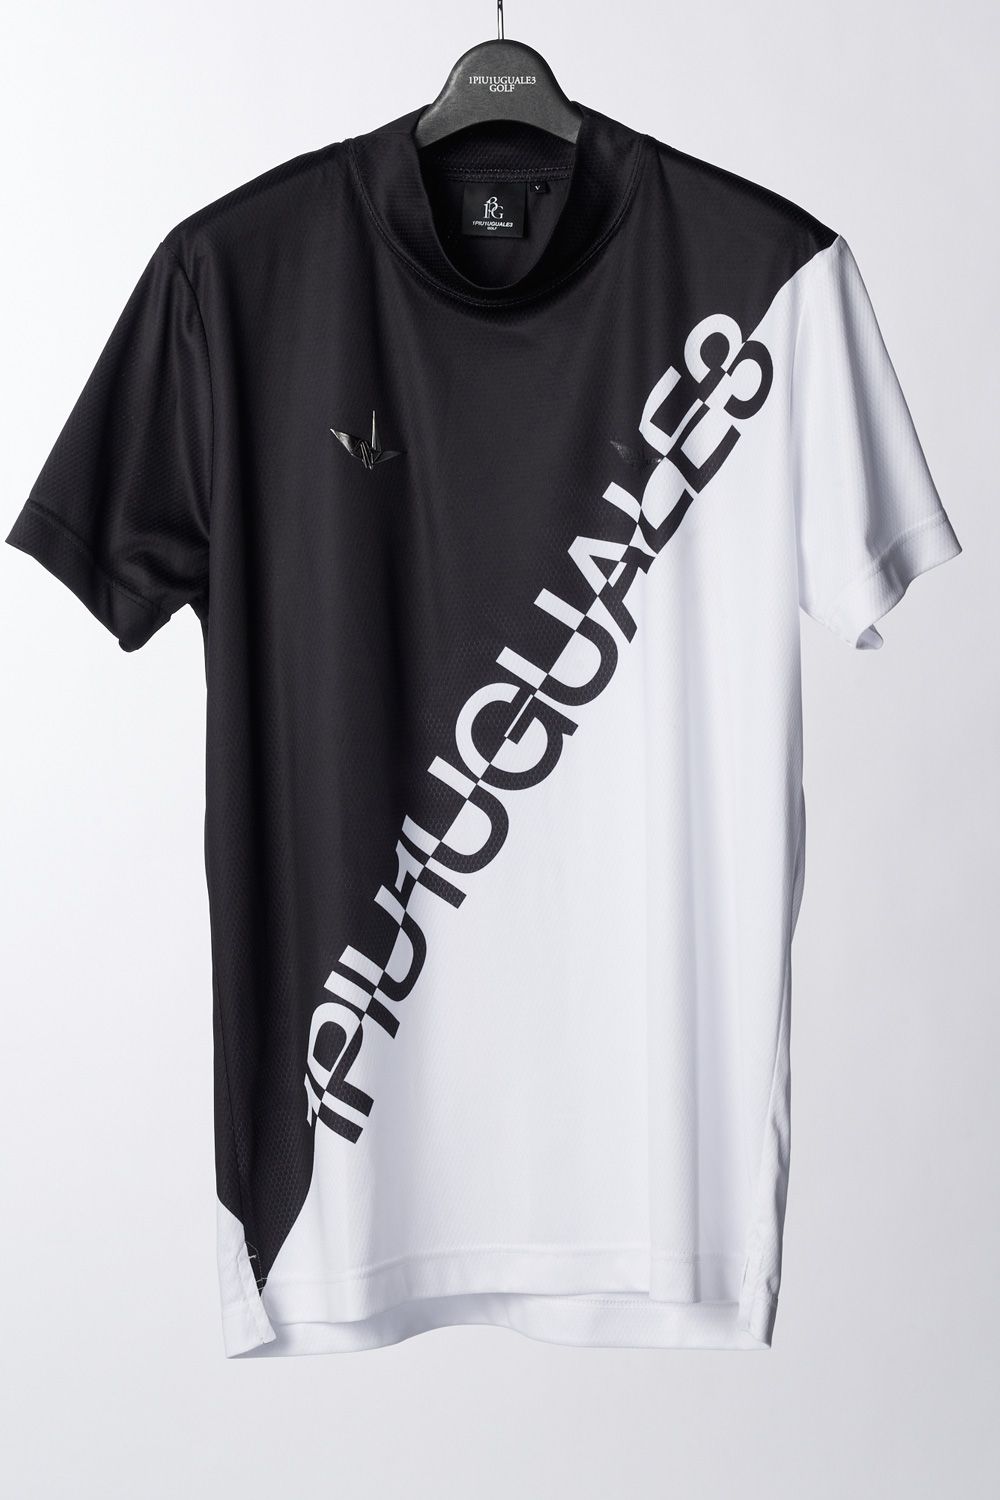 新しい到着 1PIU1UGUALE3 ウノピュウ 半袖Tシャツ グレー S 美品 V